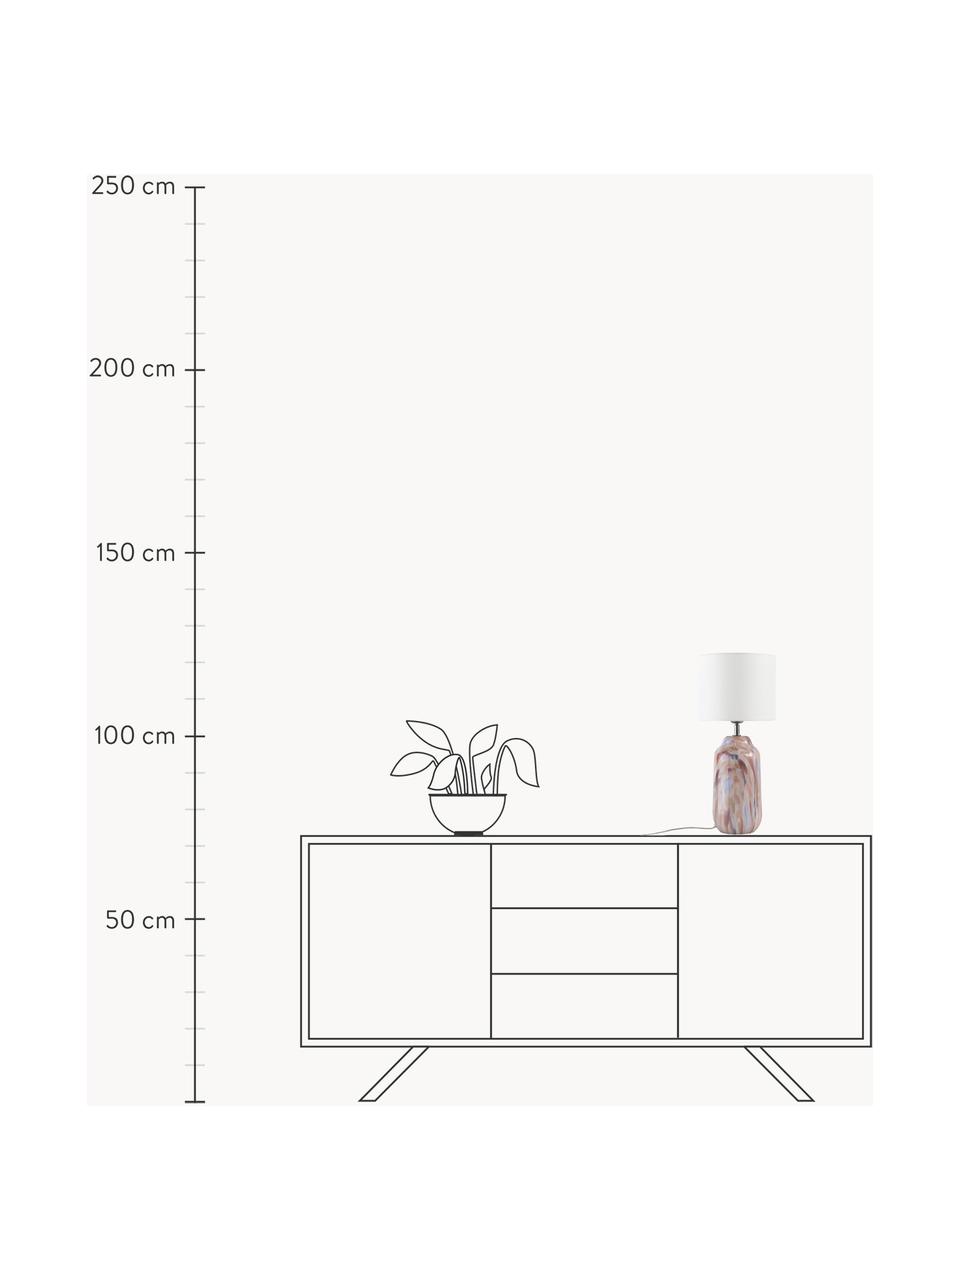 Lampa stołowa ze szkła dmuchanego Donia, Biały, odcienie różowego, Ø 22 x W 50 cm